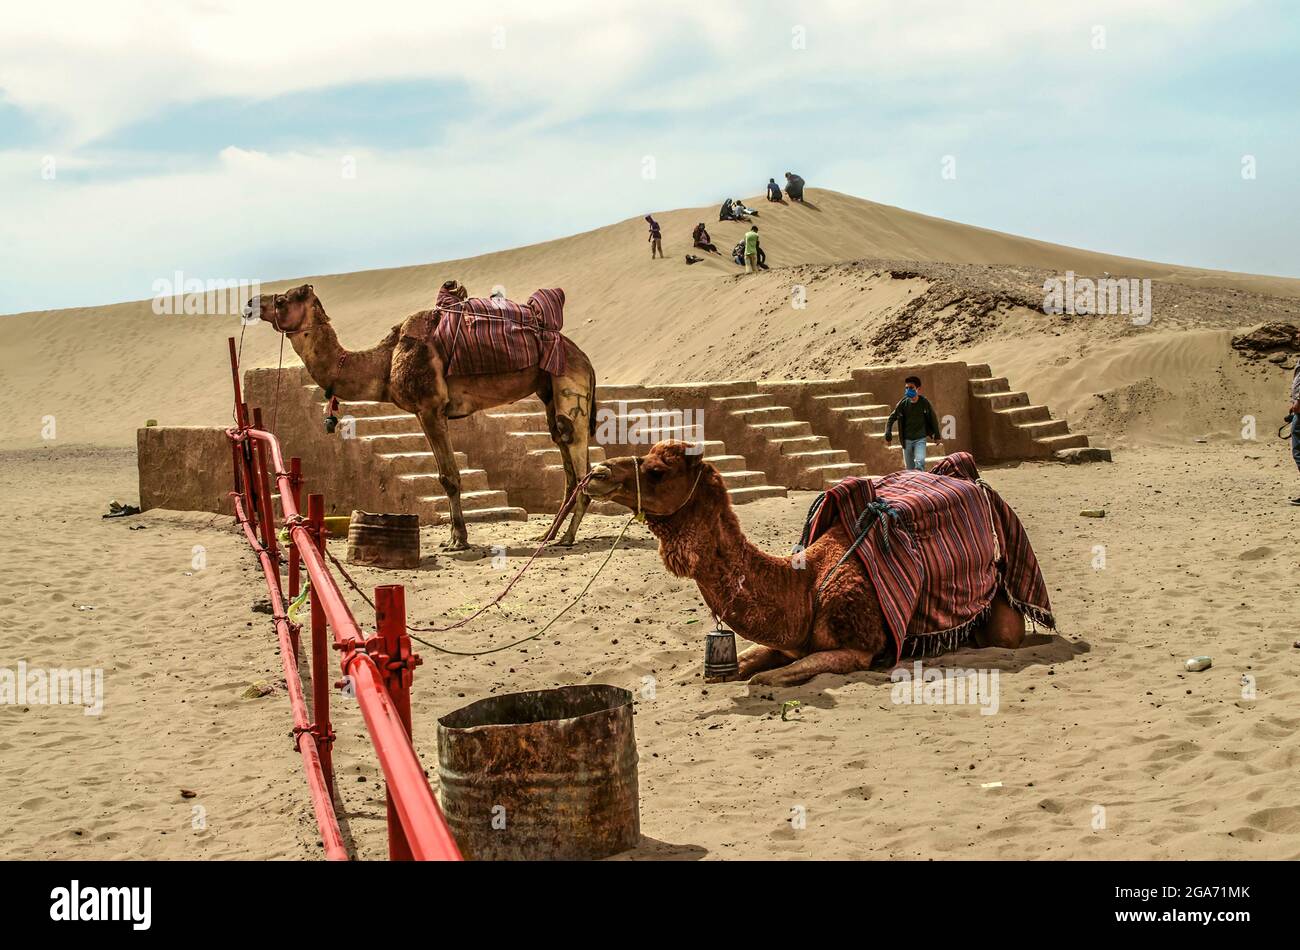 Yazd, Desert, Iran, febbraio 20,2021: Animali stanchi stanno riposando, un cammello si alza, l'altro si trova in una voliera sullo sfondo di una collina sabbiosa wh Foto Stock